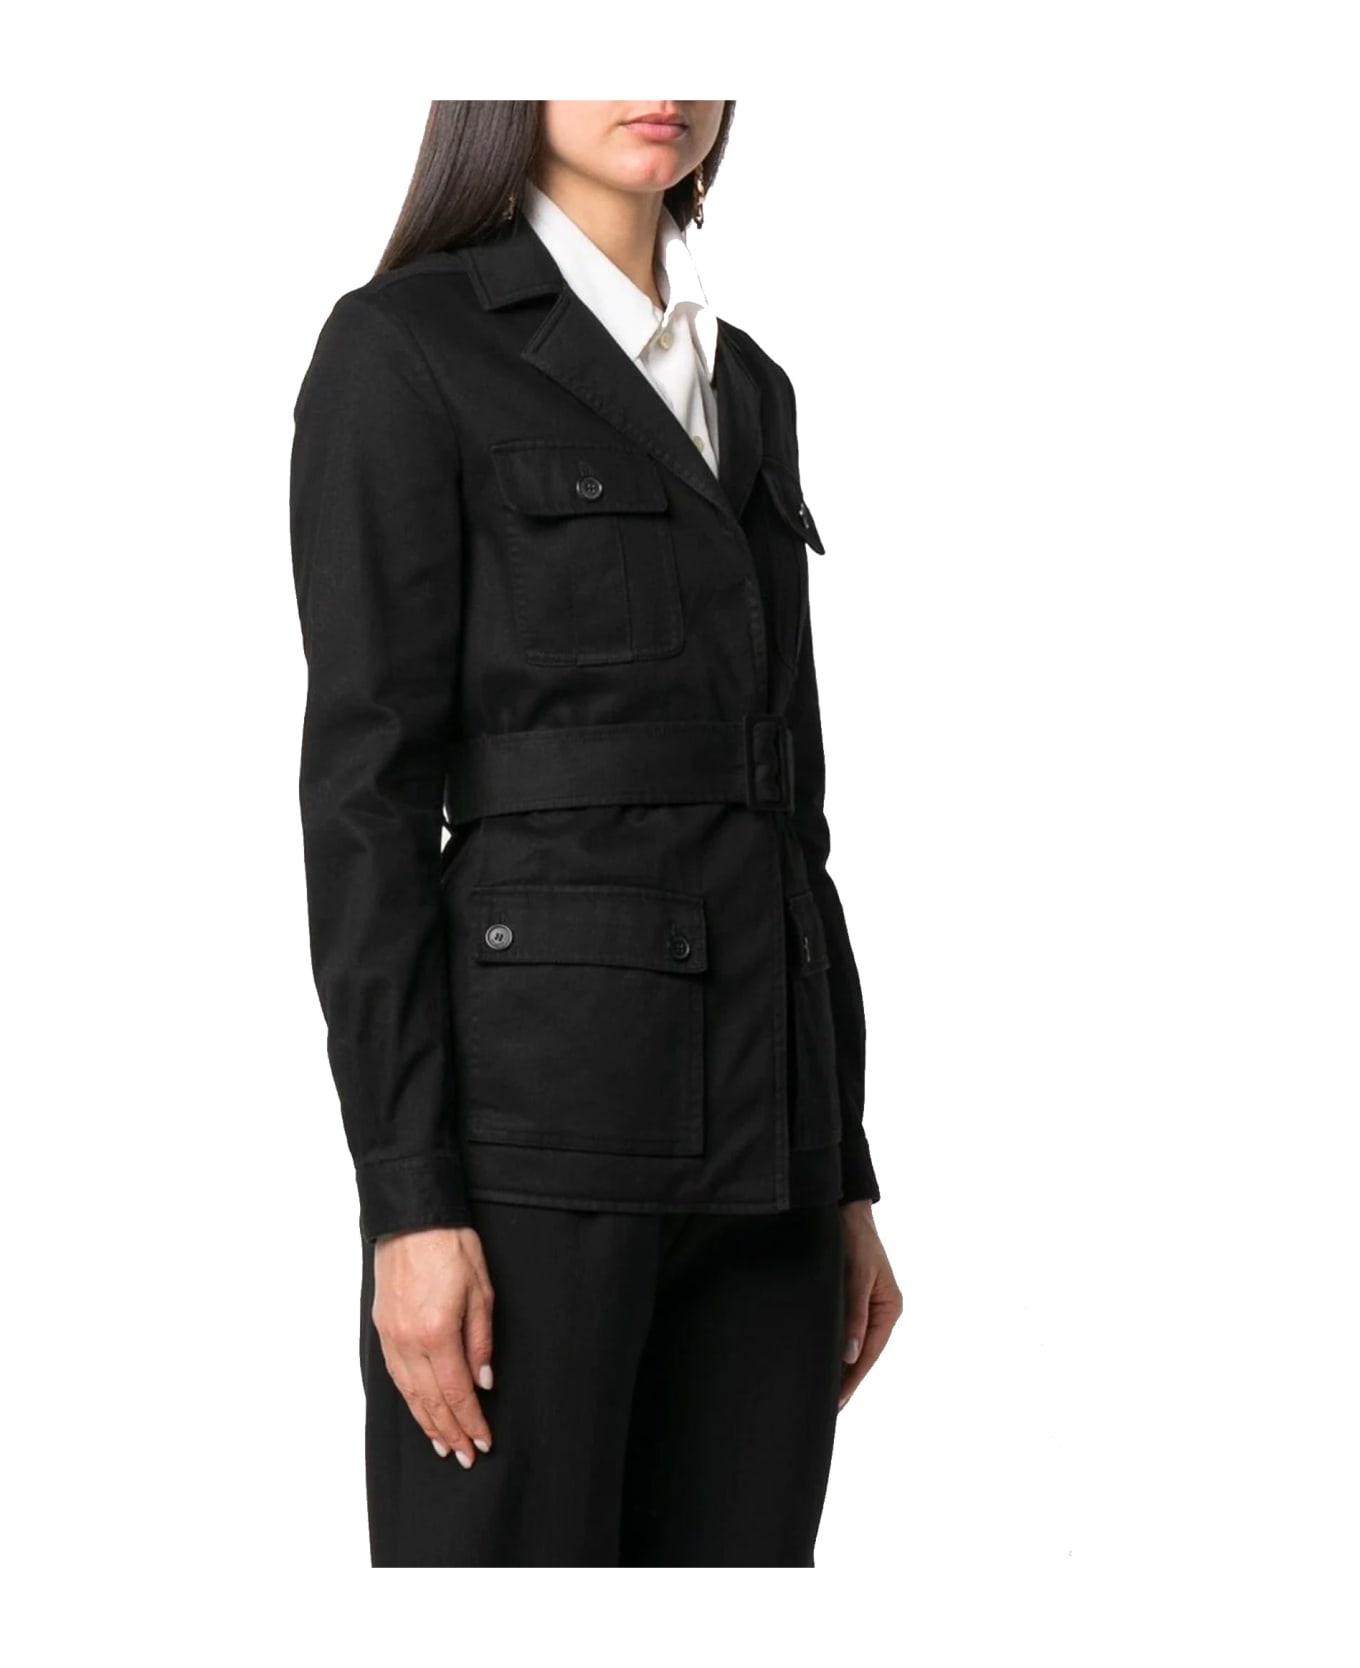 Saint Laurent Belted Flap Pocket Jacket - Black コート